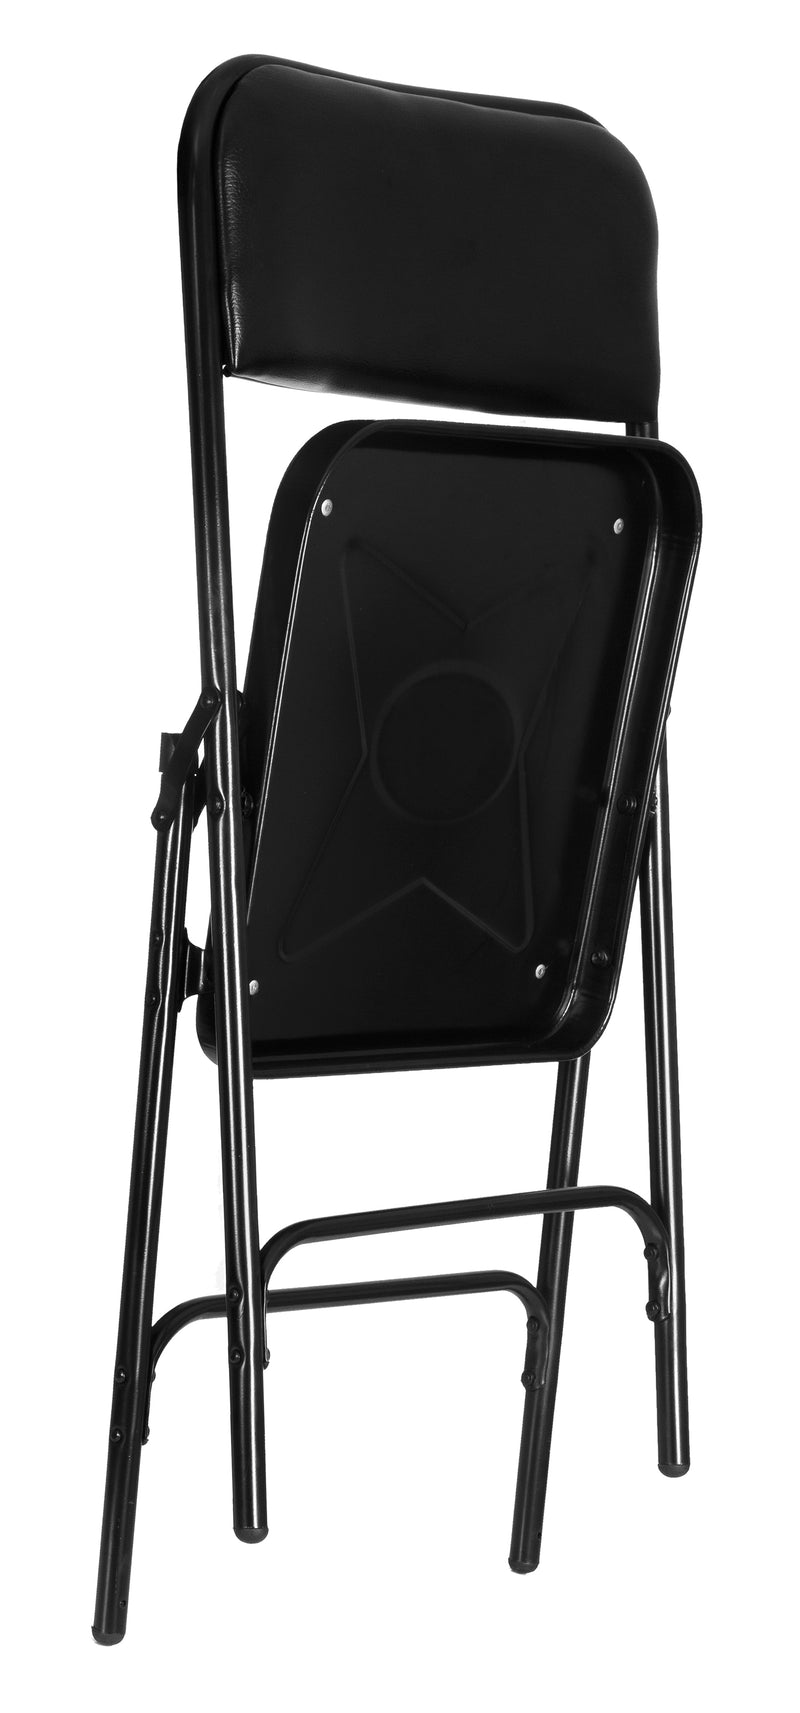 MBTC Clark Seat and Back Cushion Folding Chair - MBTC